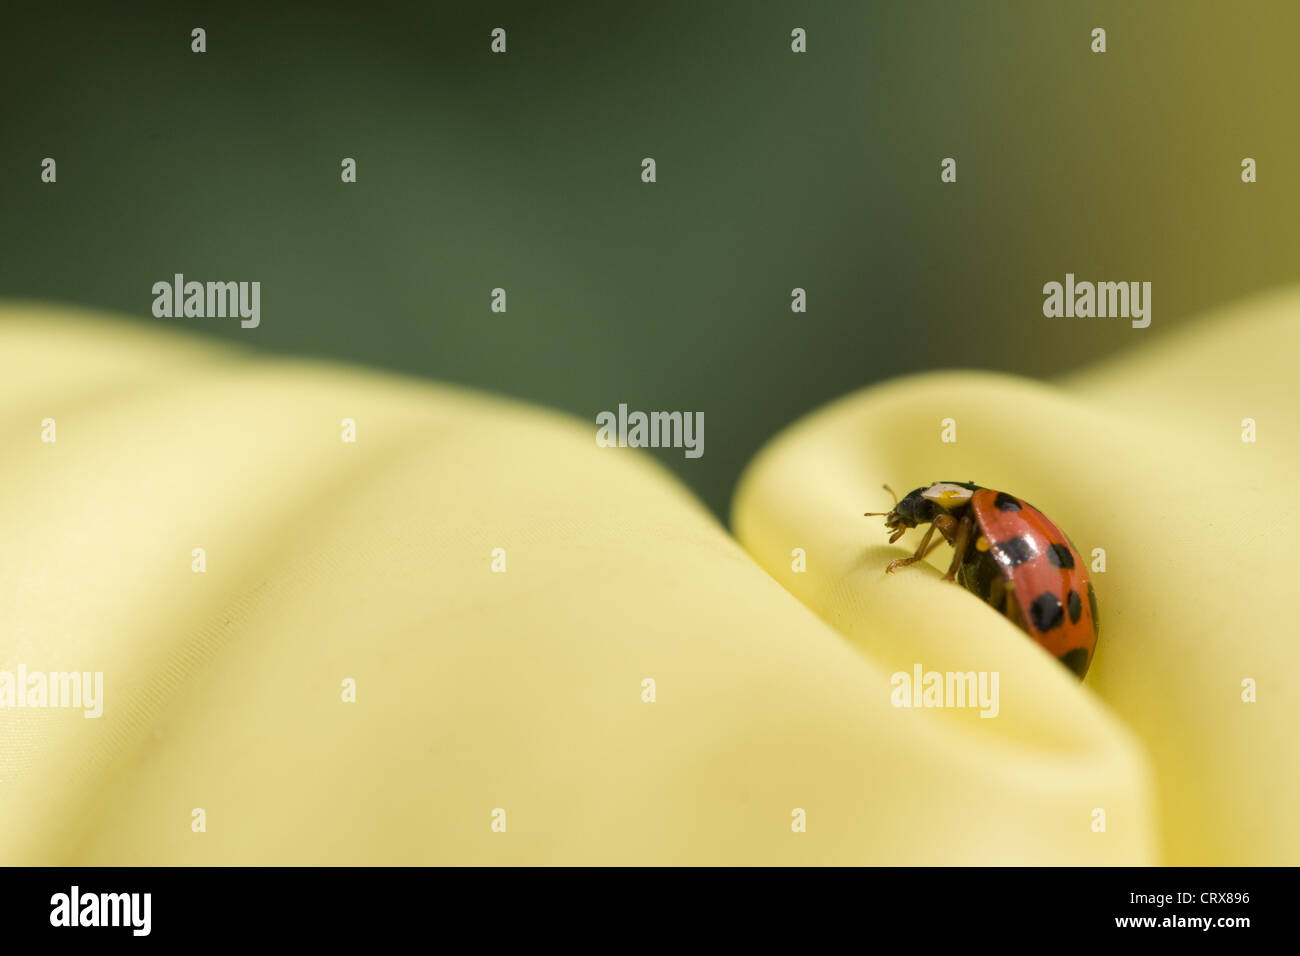 Cerrar ladybug sobre fondo verde y amarillo. Foto de stock